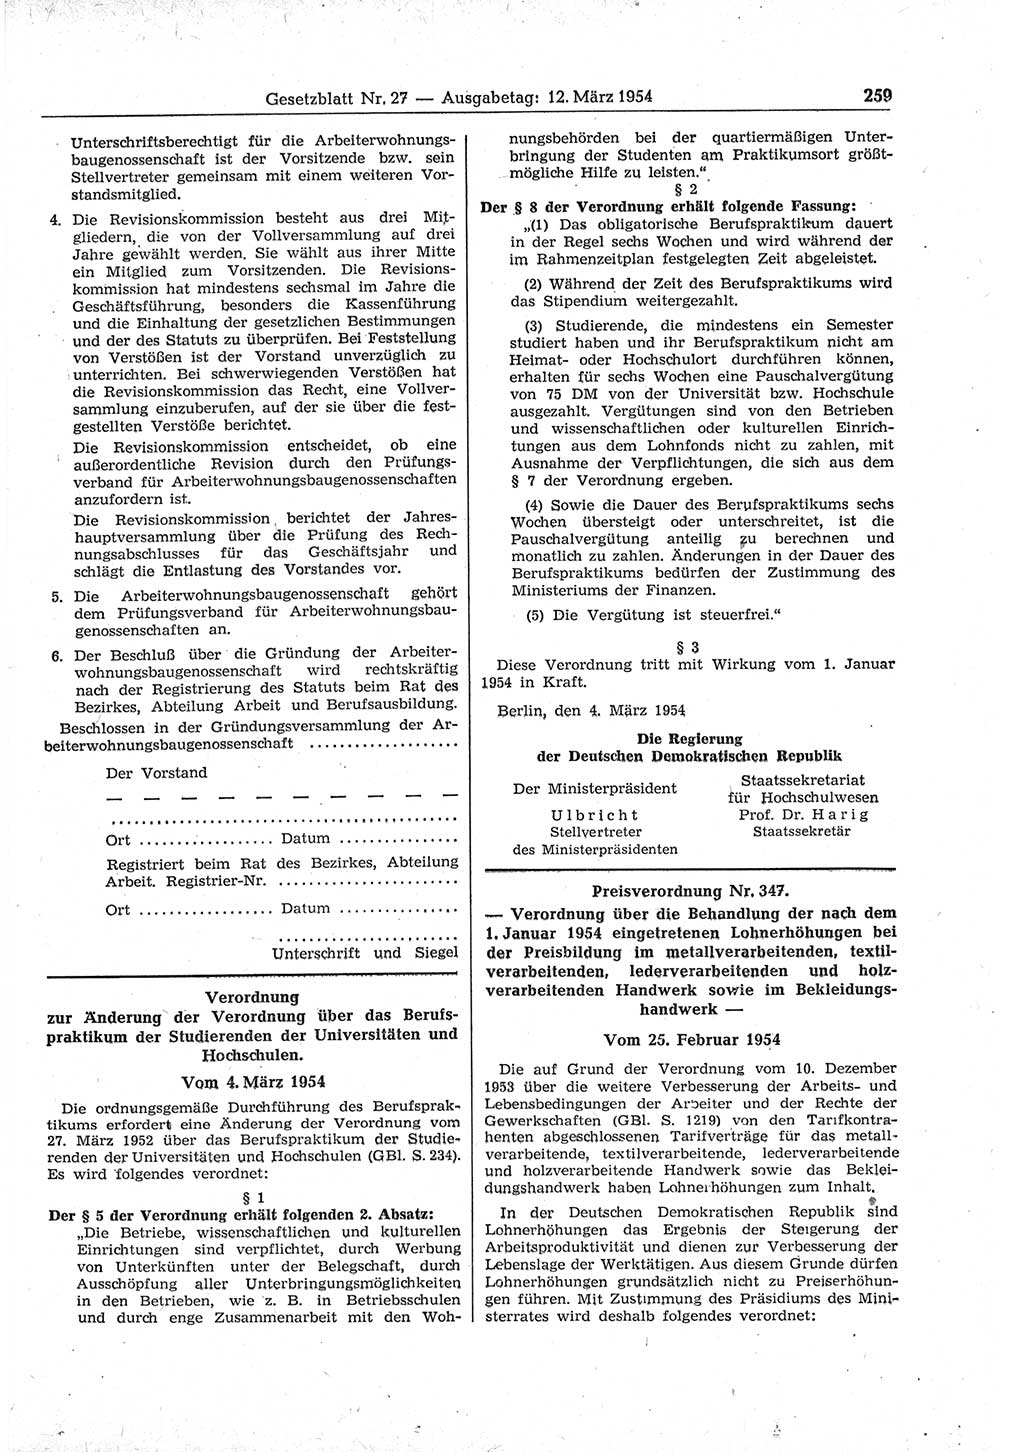 Gesetzblatt (GBl.) der Deutschen Demokratischen Republik (DDR) 1954, Seite 259 (GBl. DDR 1954, S. 259)